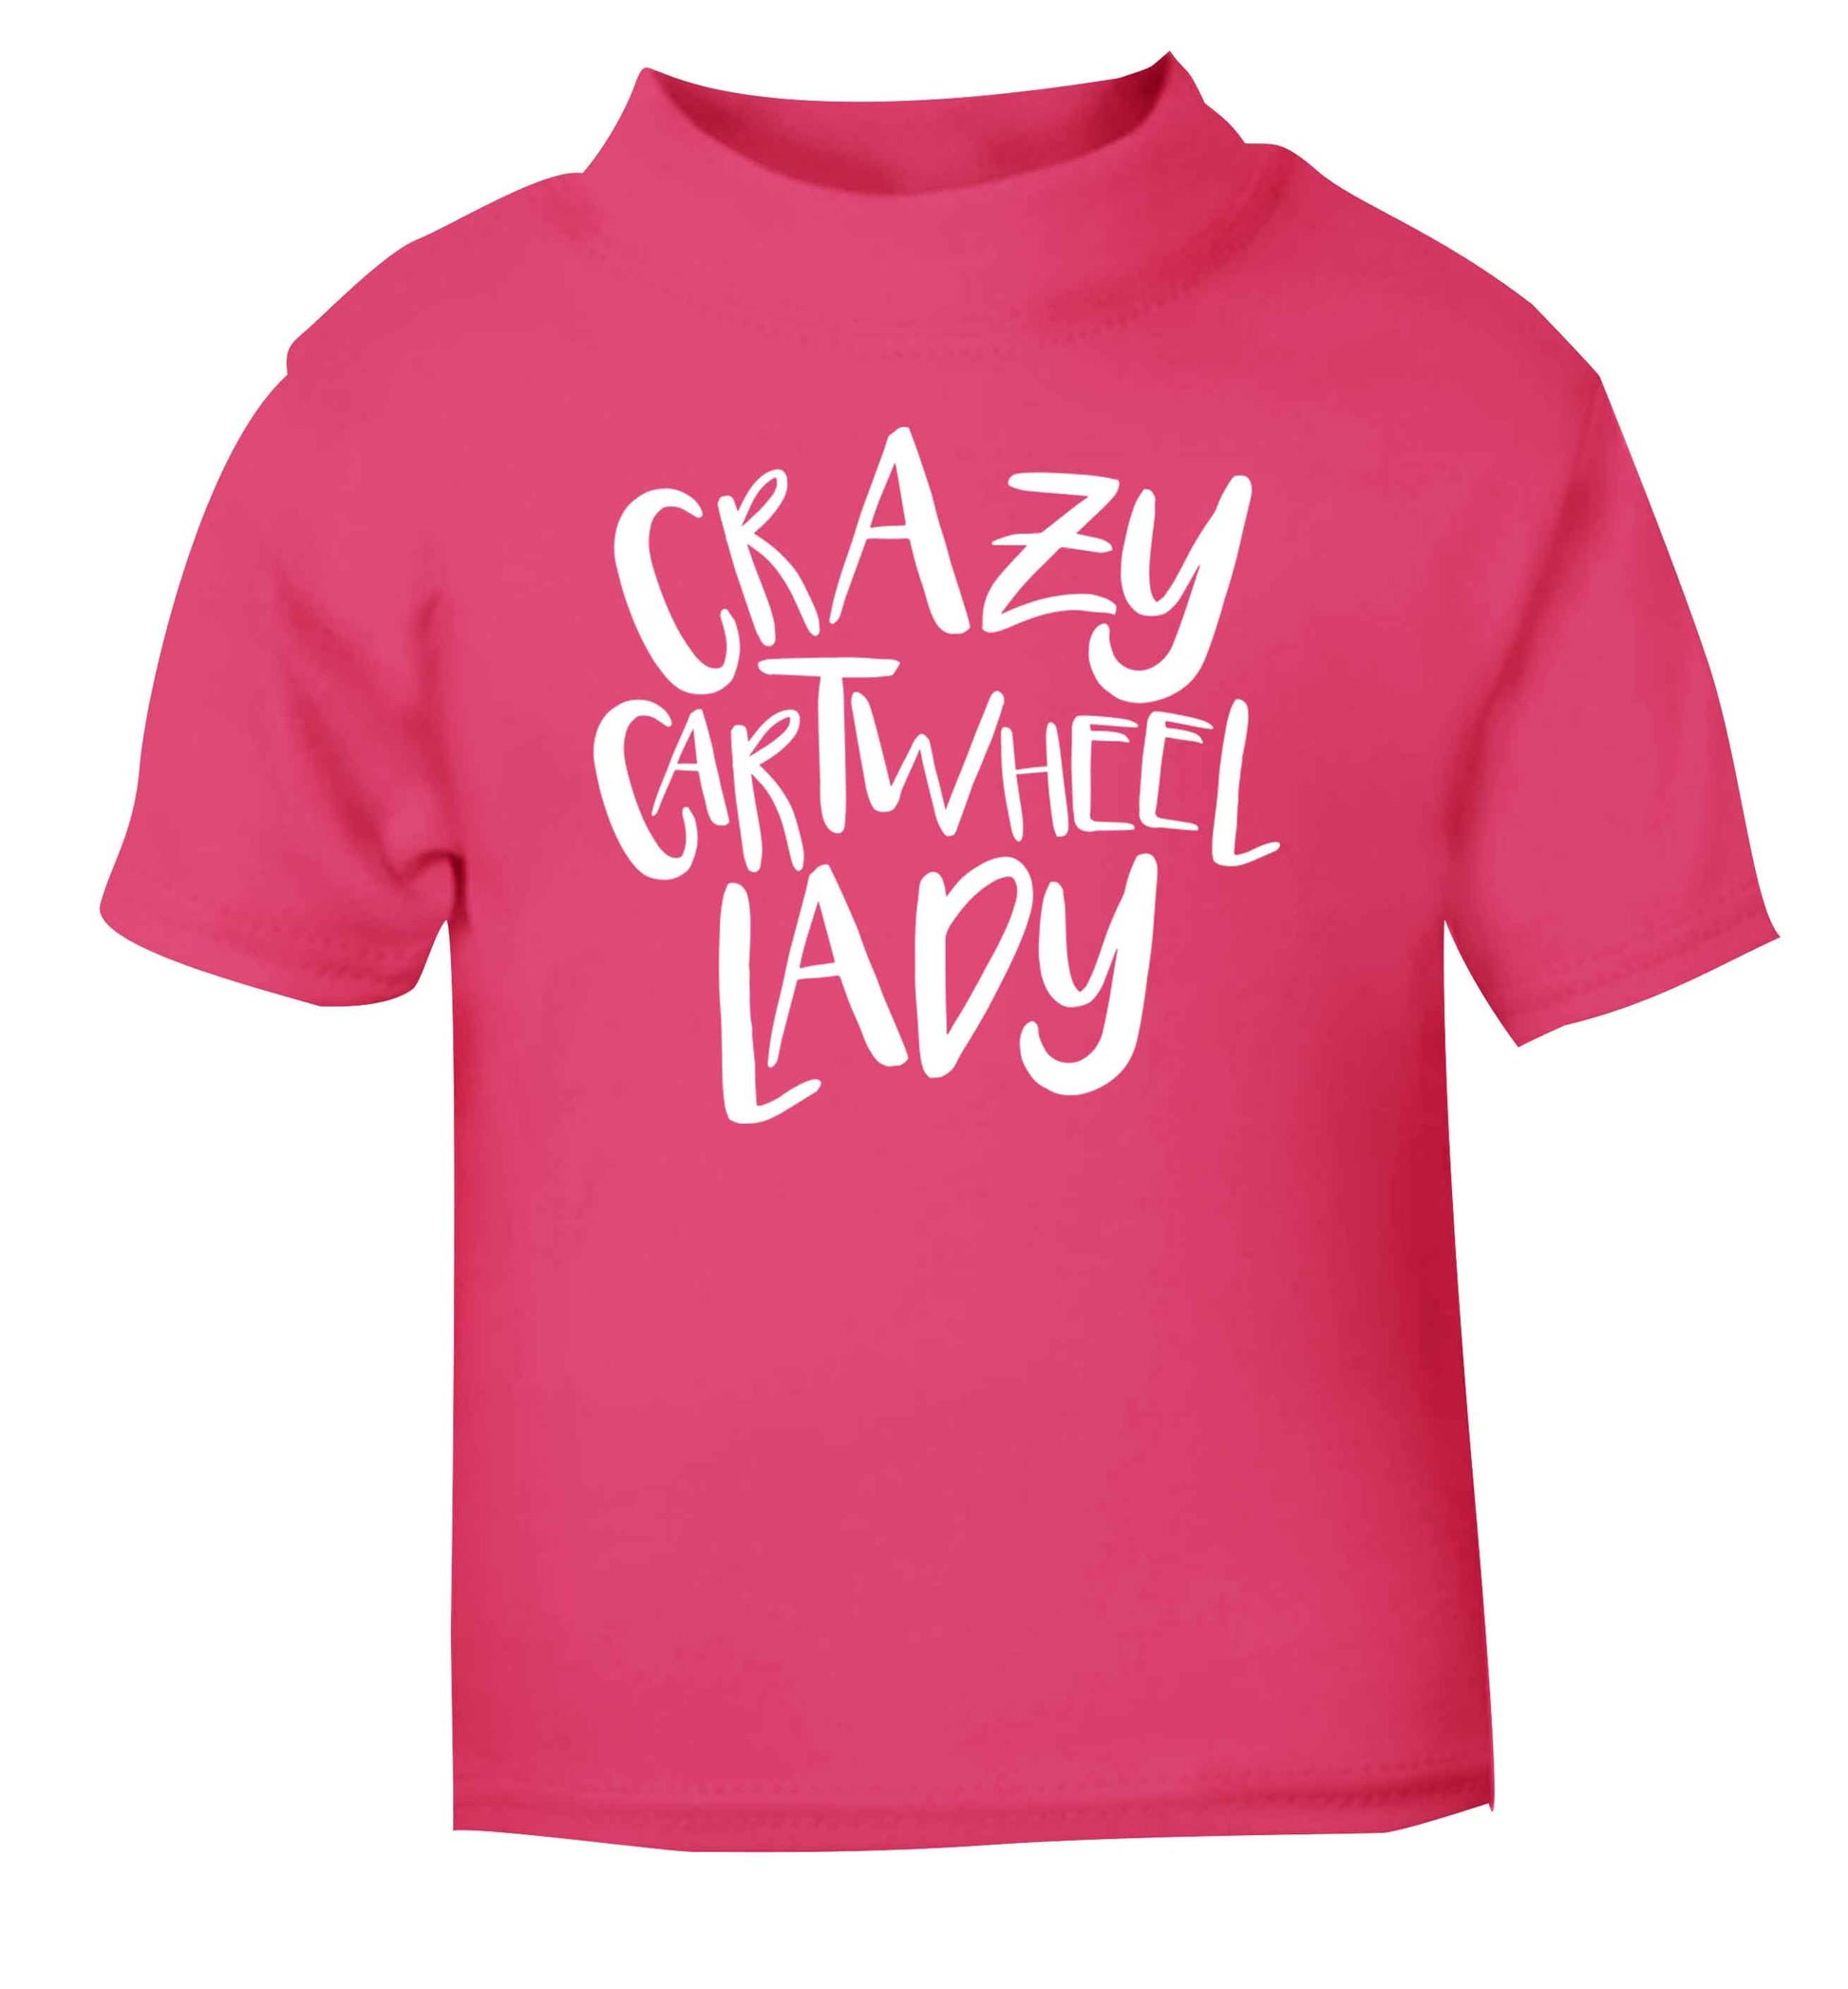 Crazy cartwheel lady pink Baby Toddler Tshirt 2 Years